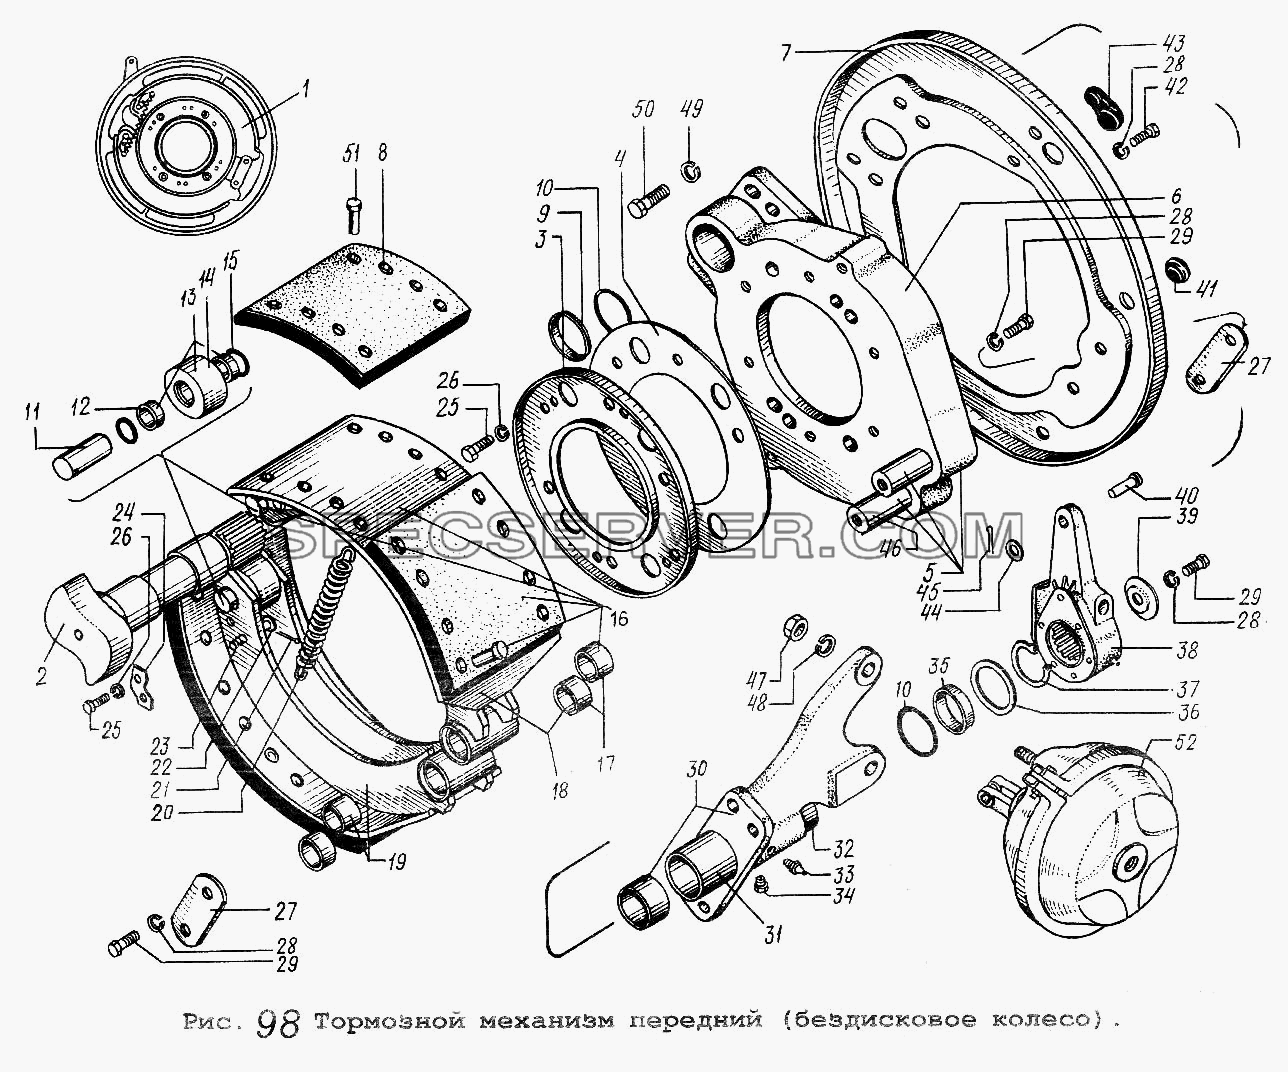 Тормозной механизм передний (бездисковое колесо) для МАЗ-54323 (список запасных частей)